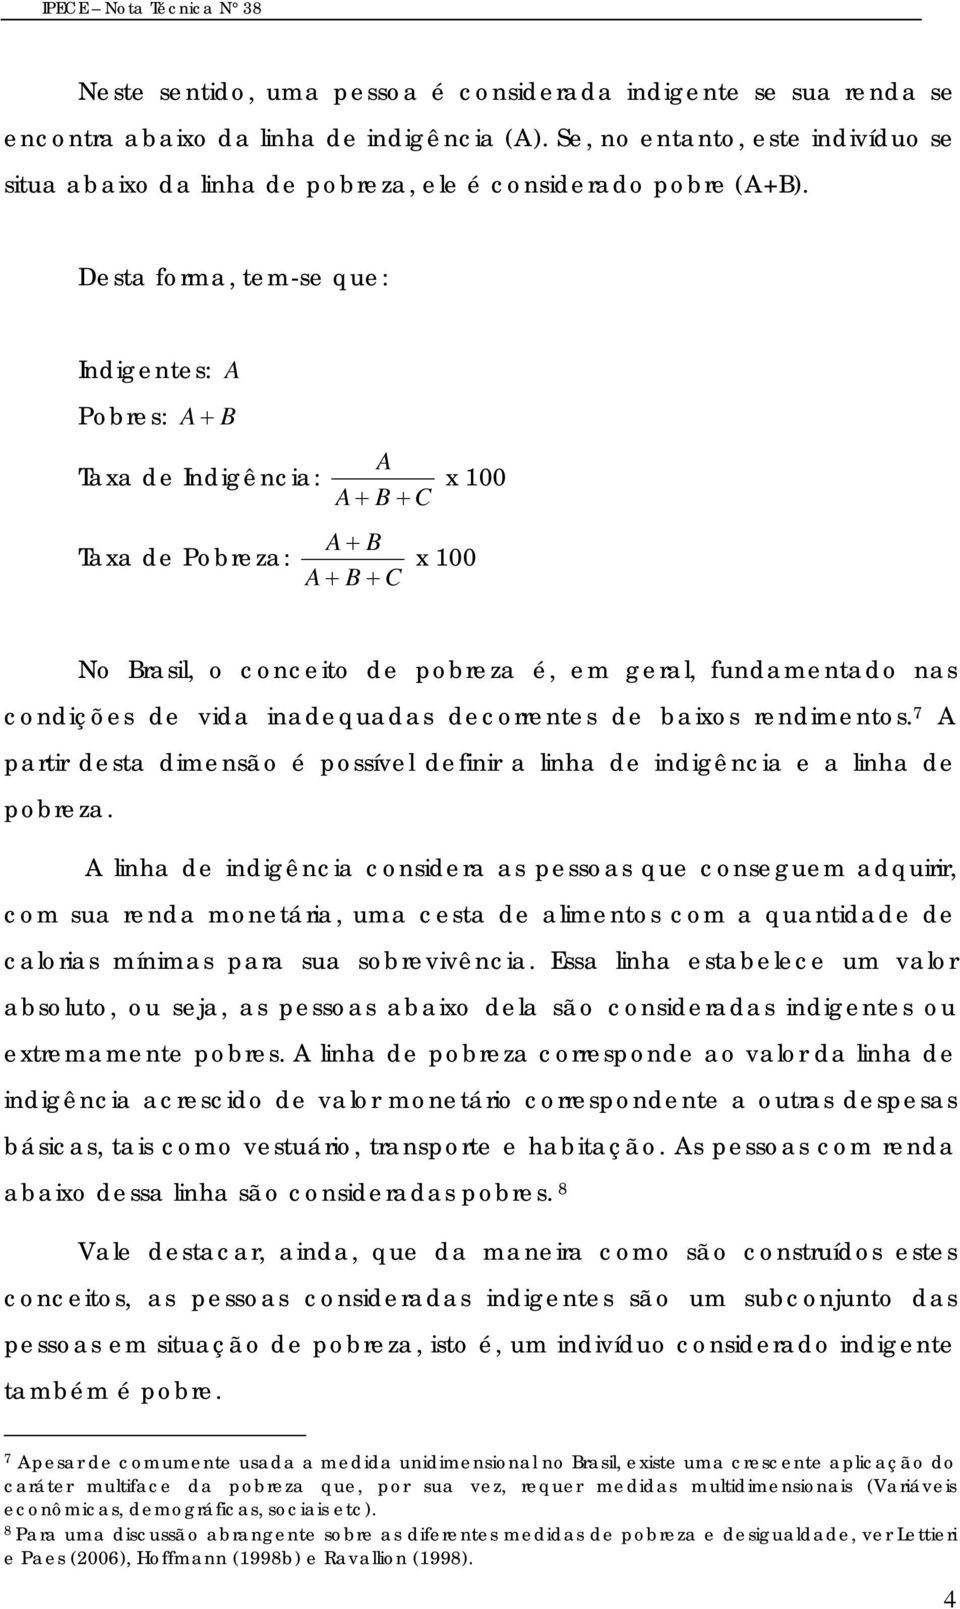 Desta forma, tem-se que: Indigentes: A Pobres: A + B Taxa de Indigência: A A + B + C x 100 Taxa de Pobreza: A + B A + B + C x 100 No Brasil, o conceito de pobreza é, em geral, fundamentado nas